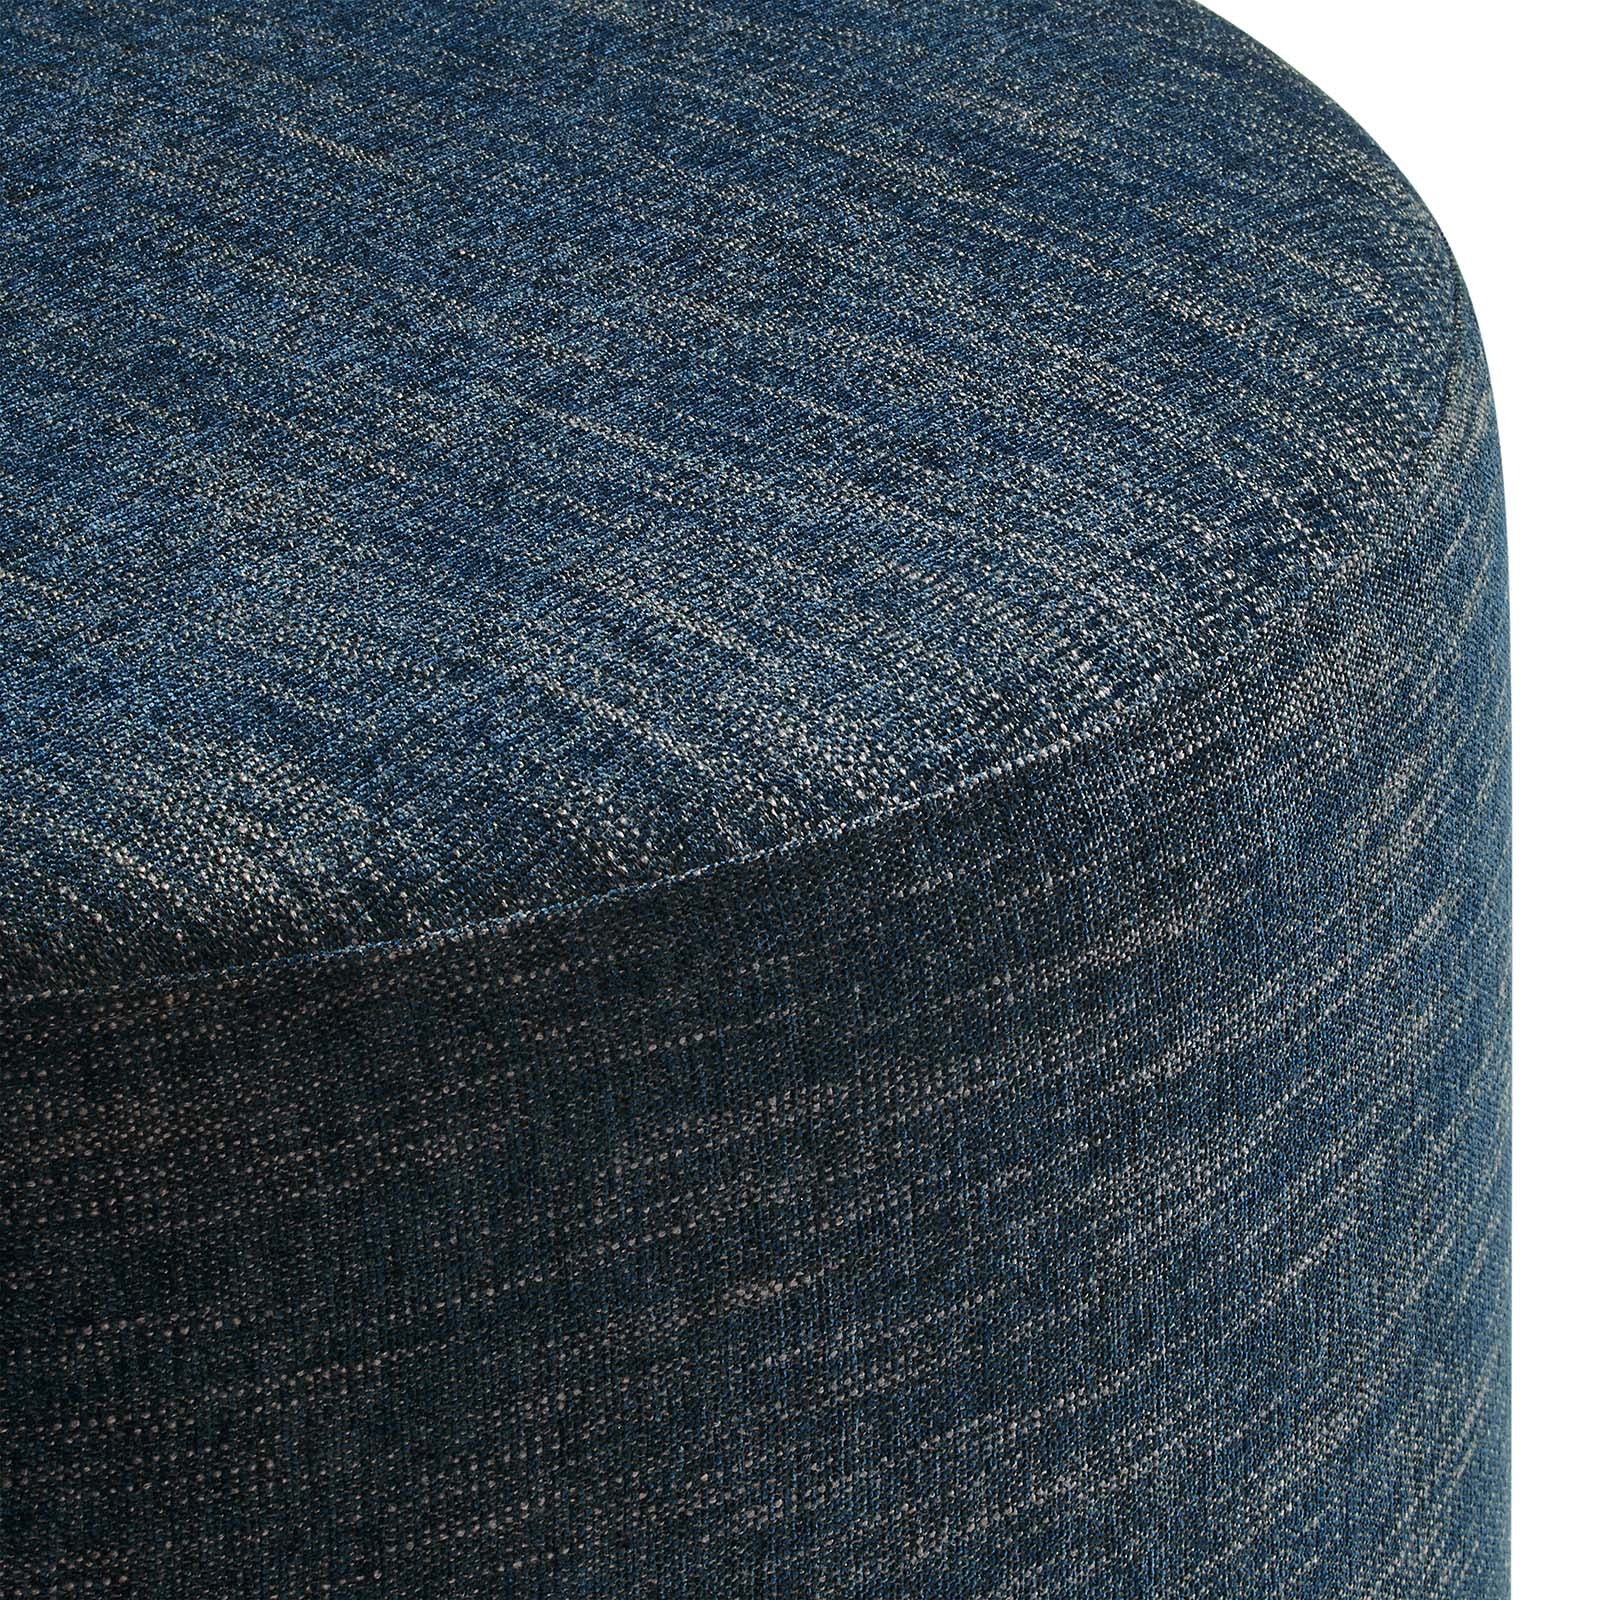 Callum Large 29" Round Woven Heathered Fabric Upholstered Ottoman-Ottoman-Modway-Wall2Wall Furnishings